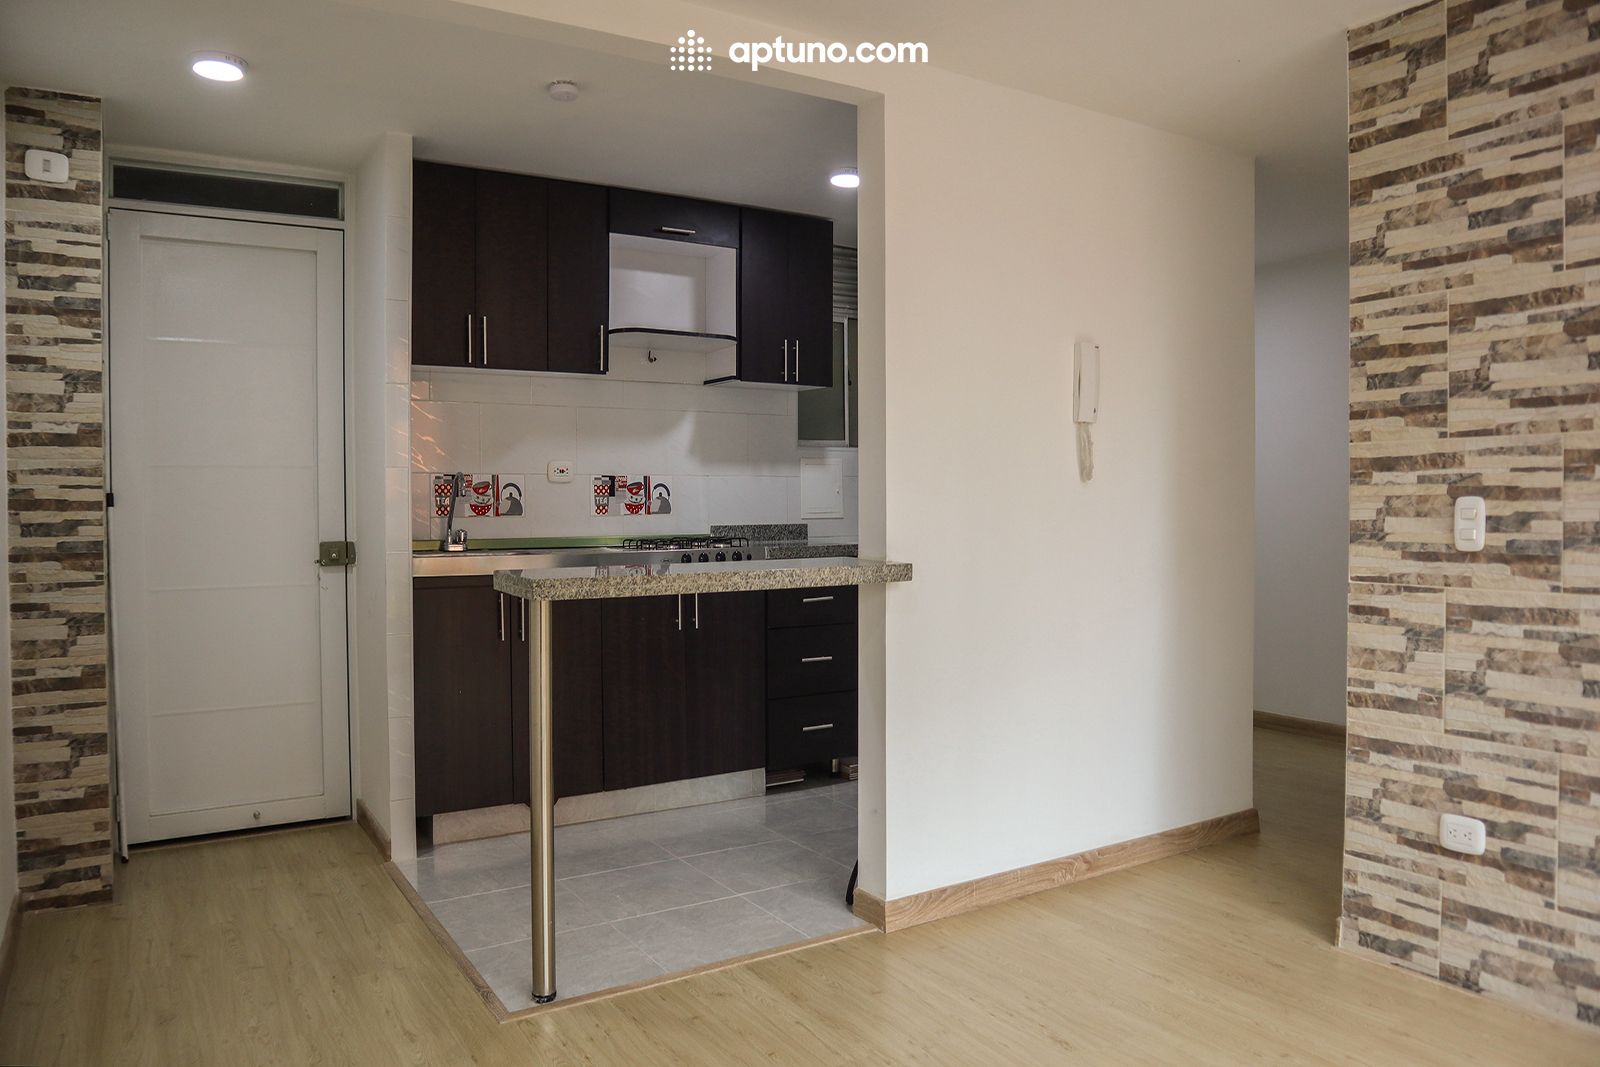 Apartamento en arriendo Madrid 64 m² - $ 920.000